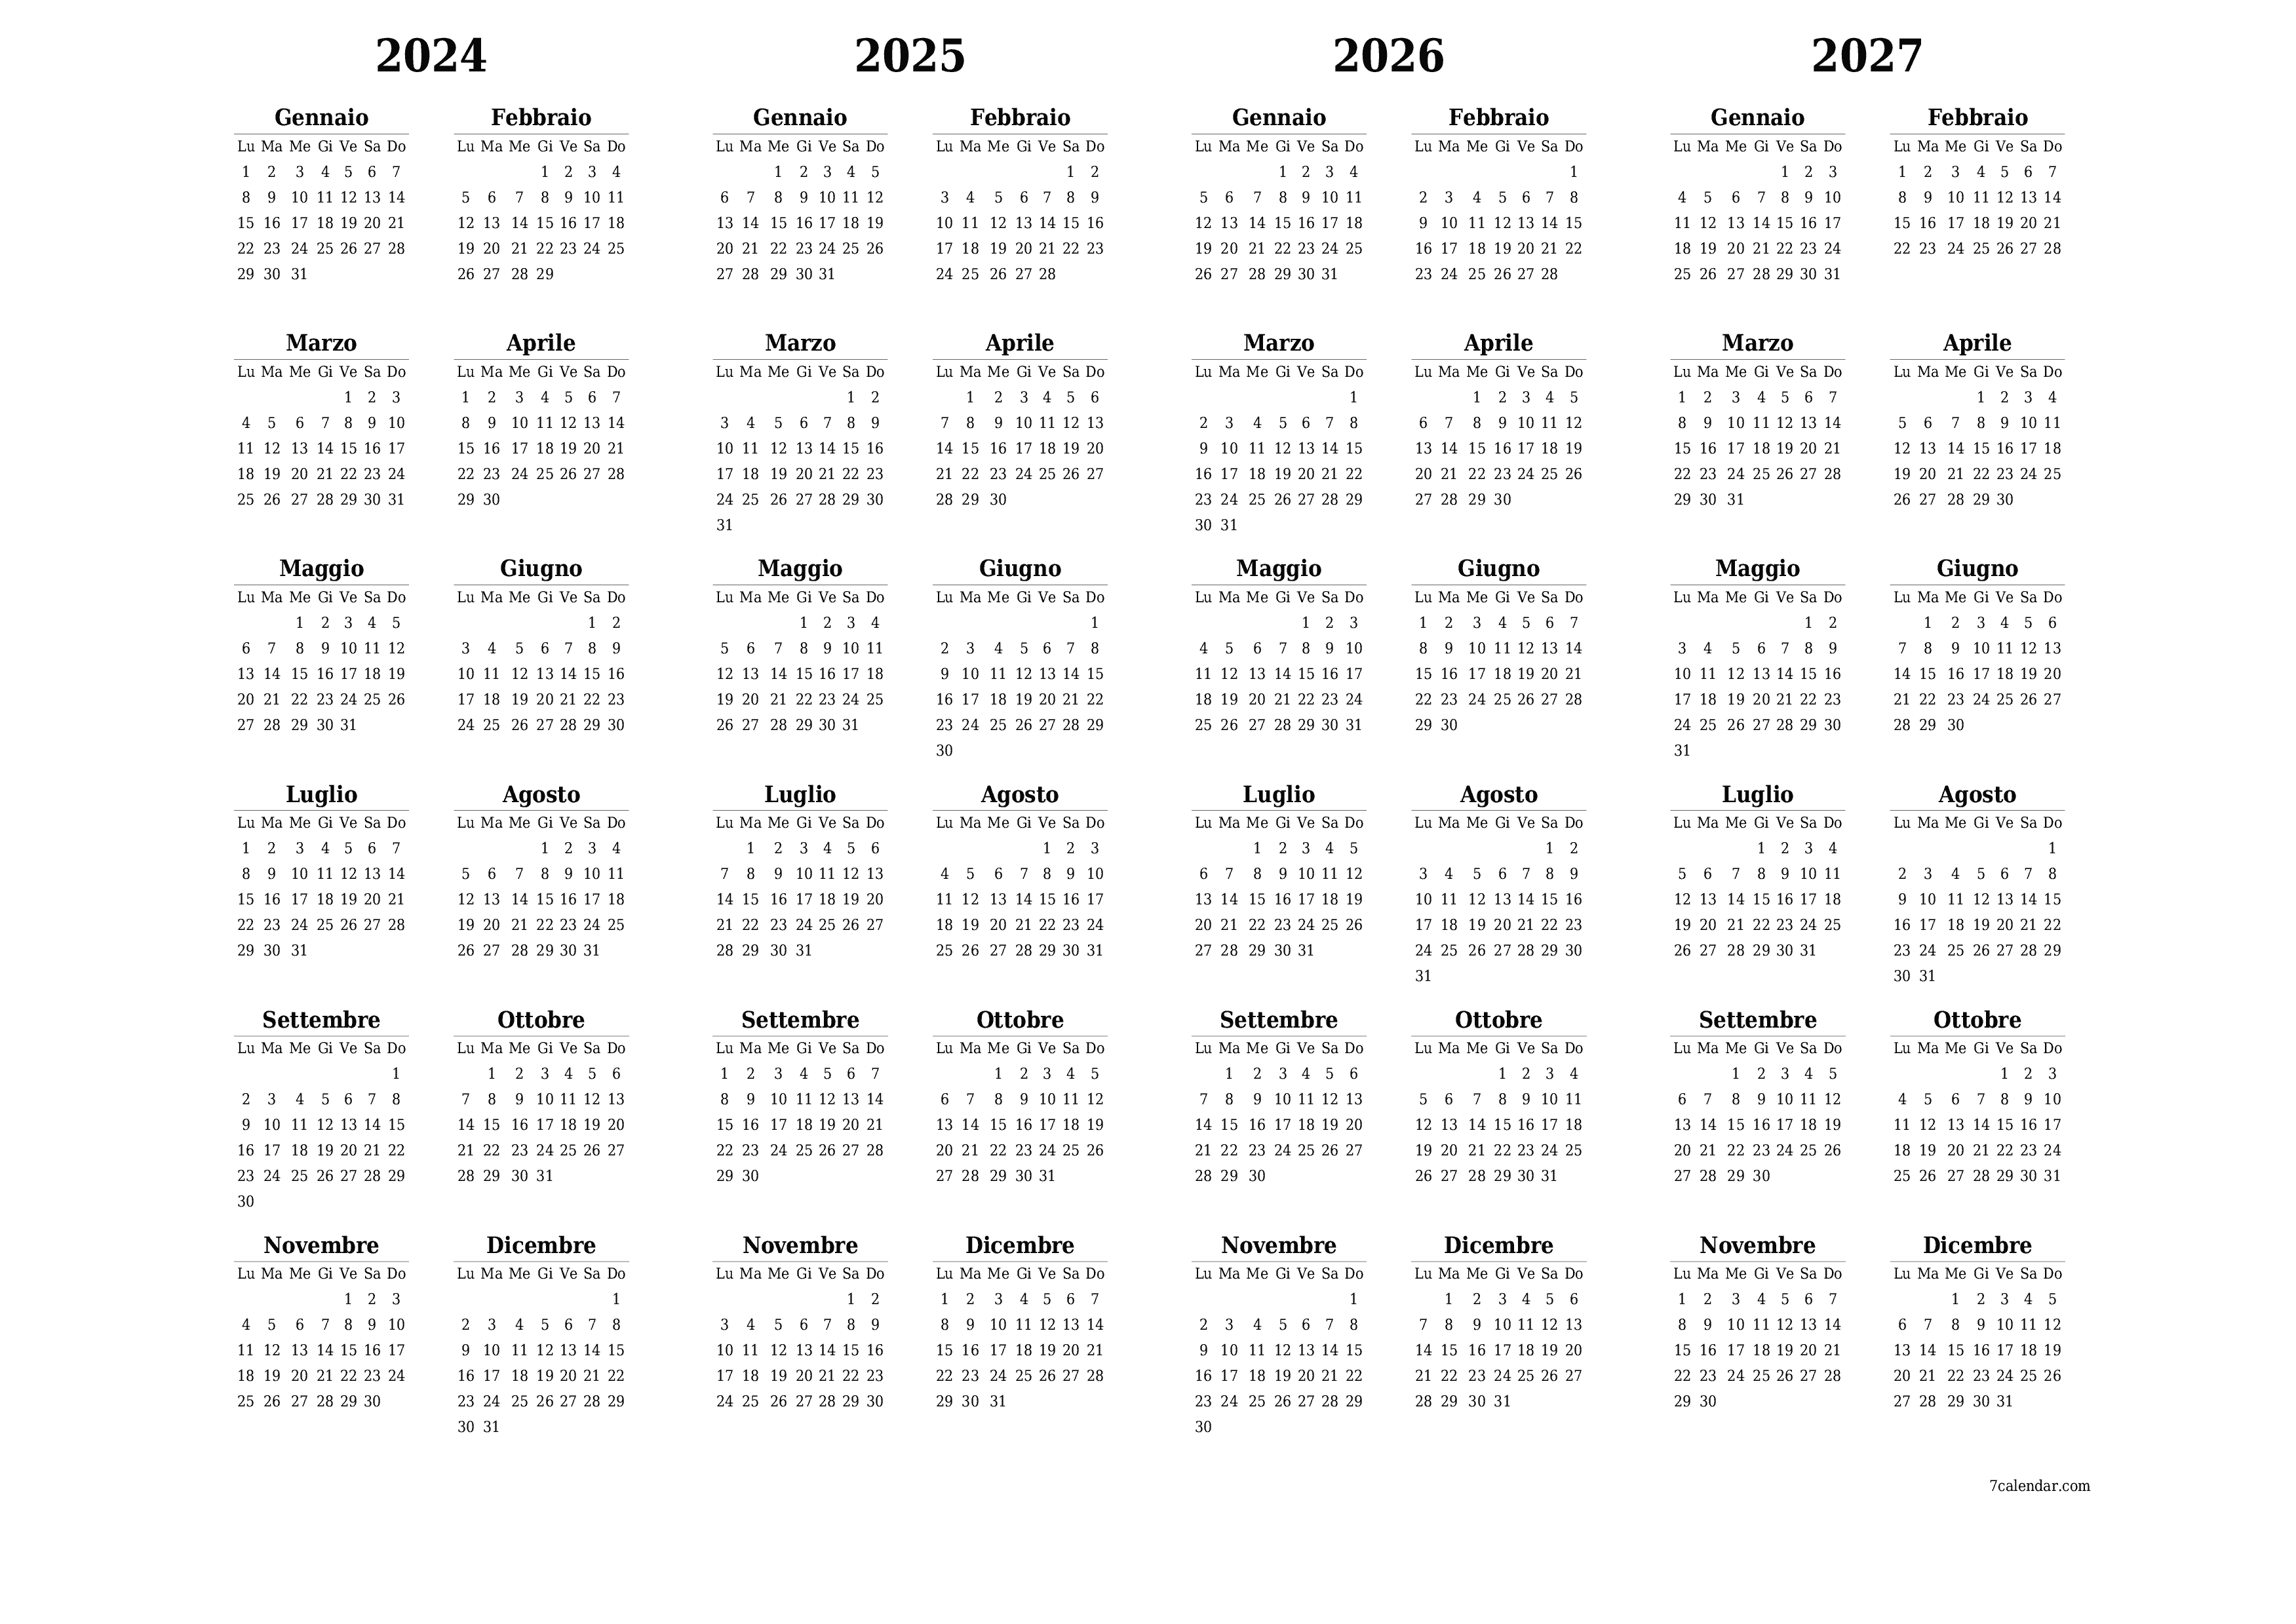  stampabile da parete modello di gratuitoorizzontale Annuale calendario Giugno (Giu) 2024